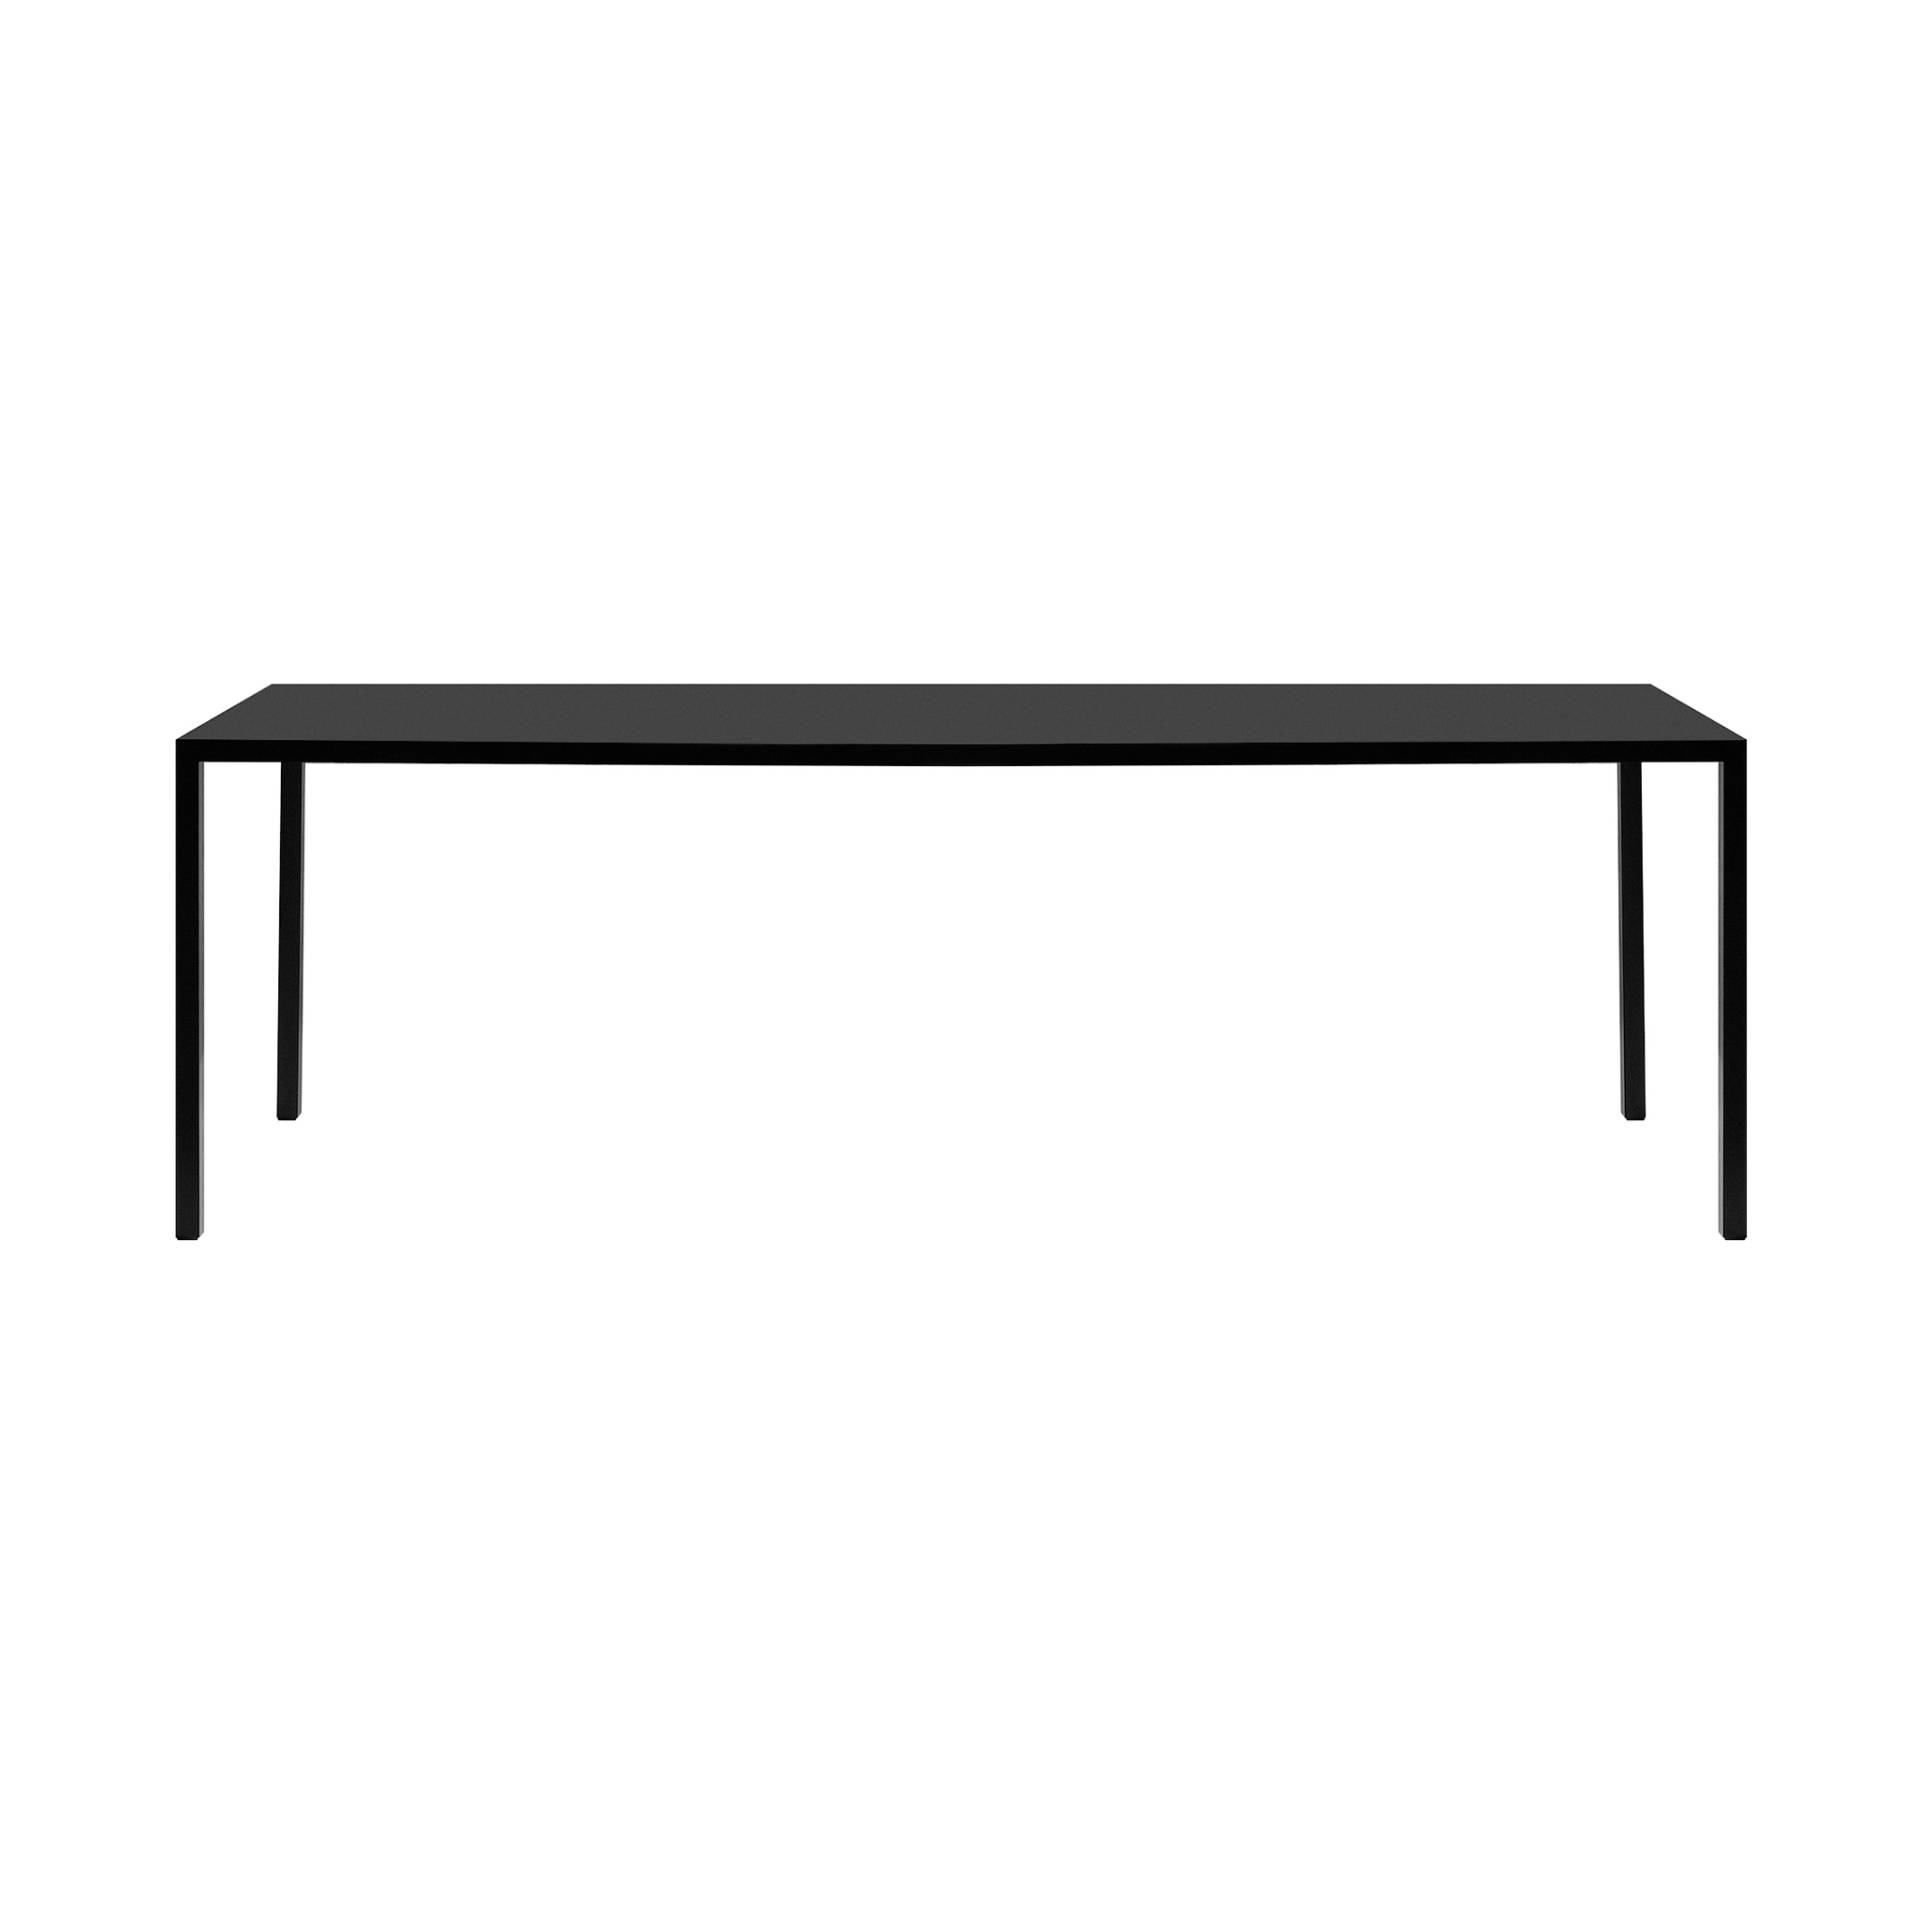 MDF Italia - Tense Esstisch schwarz 200x100cm - schwarz/Tischplatte Fenix 35 mm/LxBxH 200x100x73cm/Gestell Stahl 3,5x3,5cm von MDF Italia